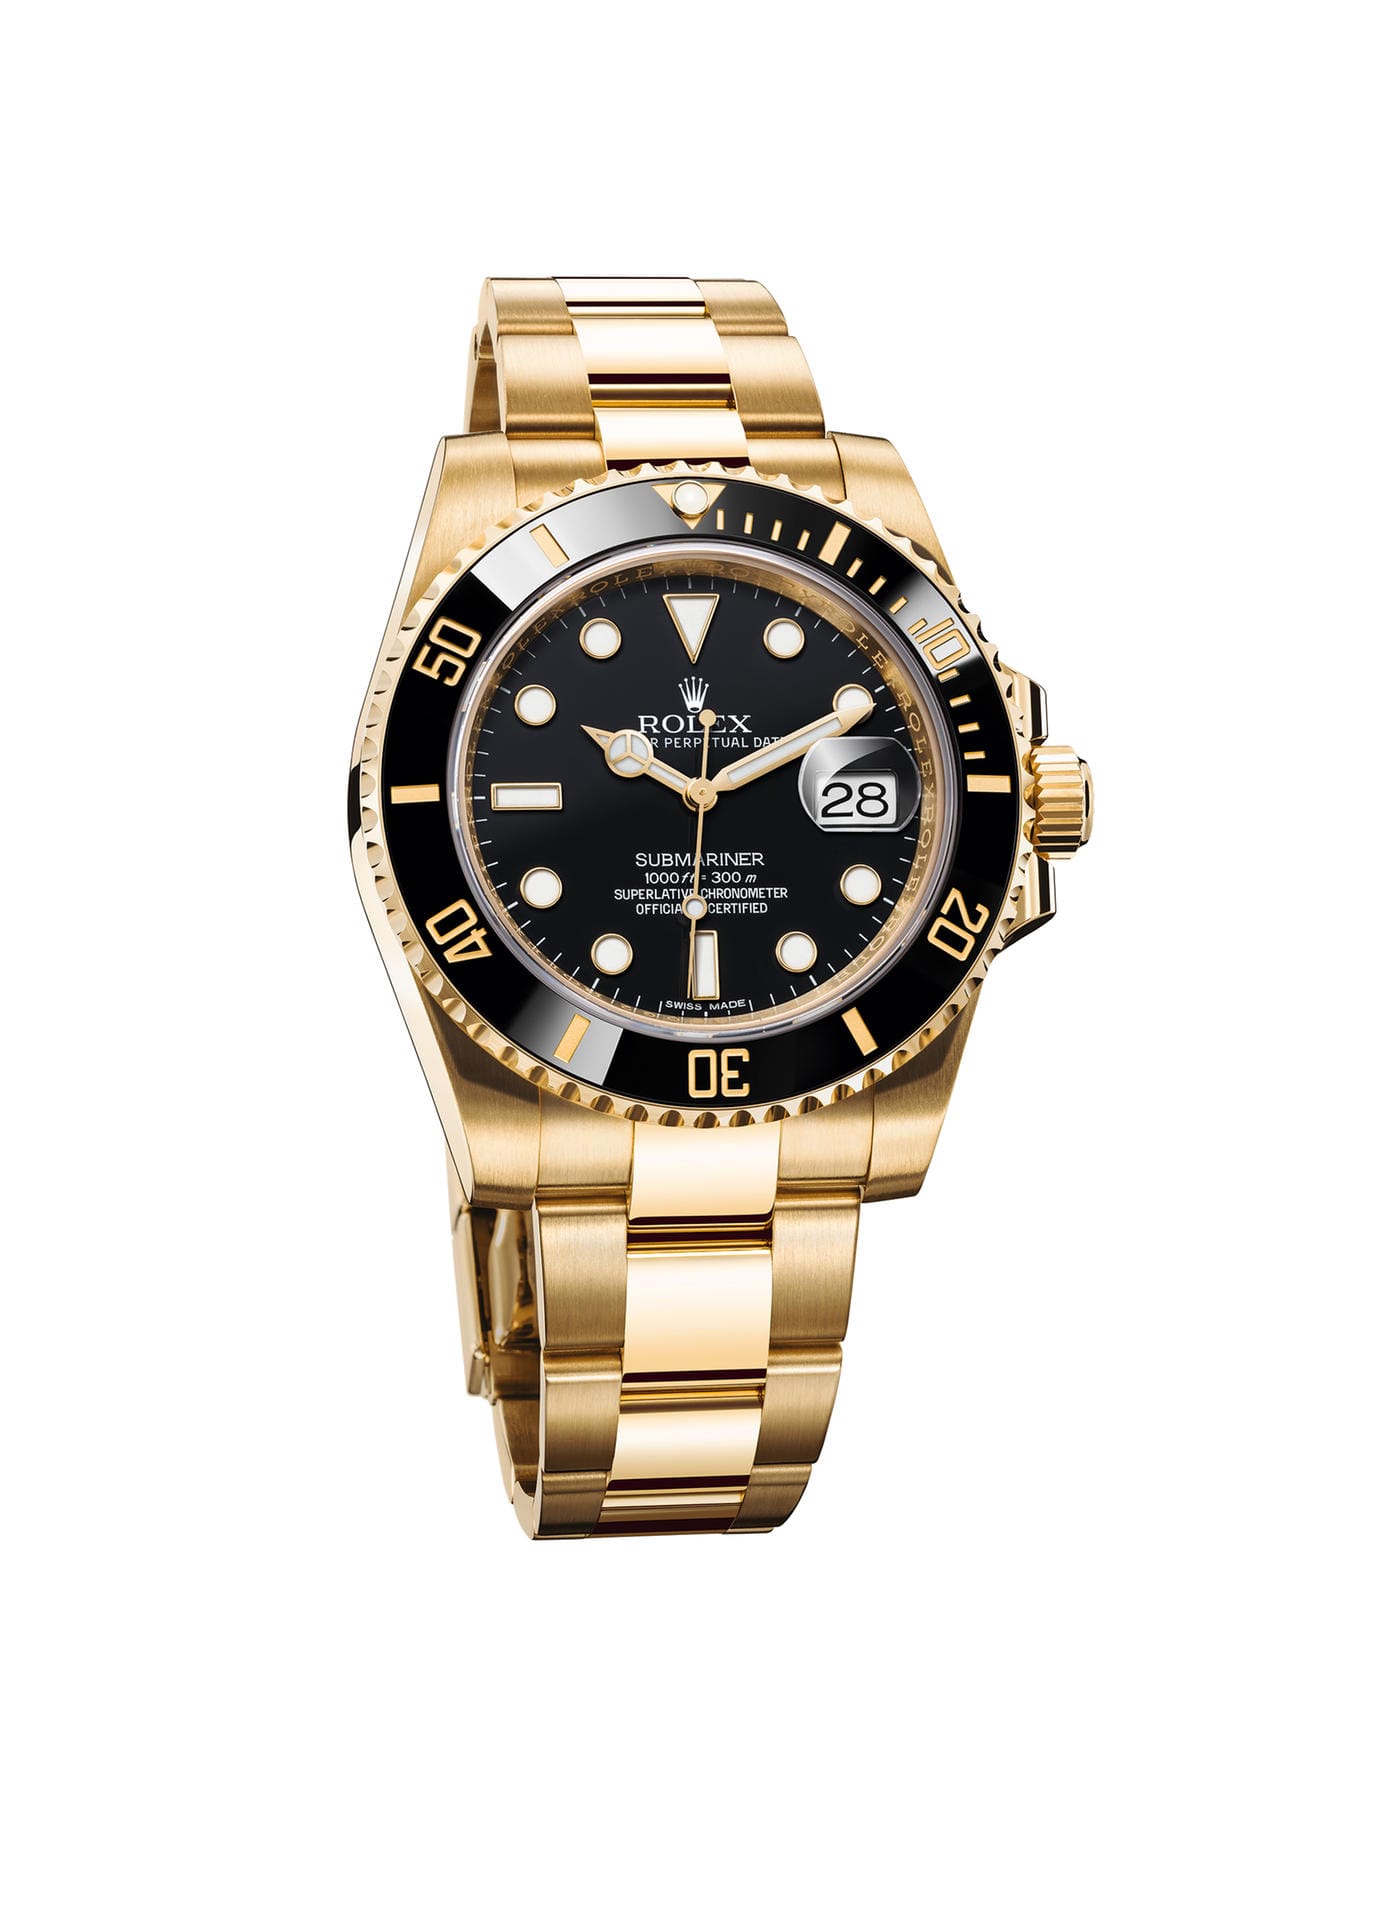 Gold geht an die hier ebenfalls in gold abgebildete Rolex Submariner. Dank ihres funktionellen Designs ist die Oyster Perpetual Submariner schnell zur Ikone geworden. Wer sich diesen Uhrenklassiker gönnen möchte, zahlt ab 31.100 Euro.